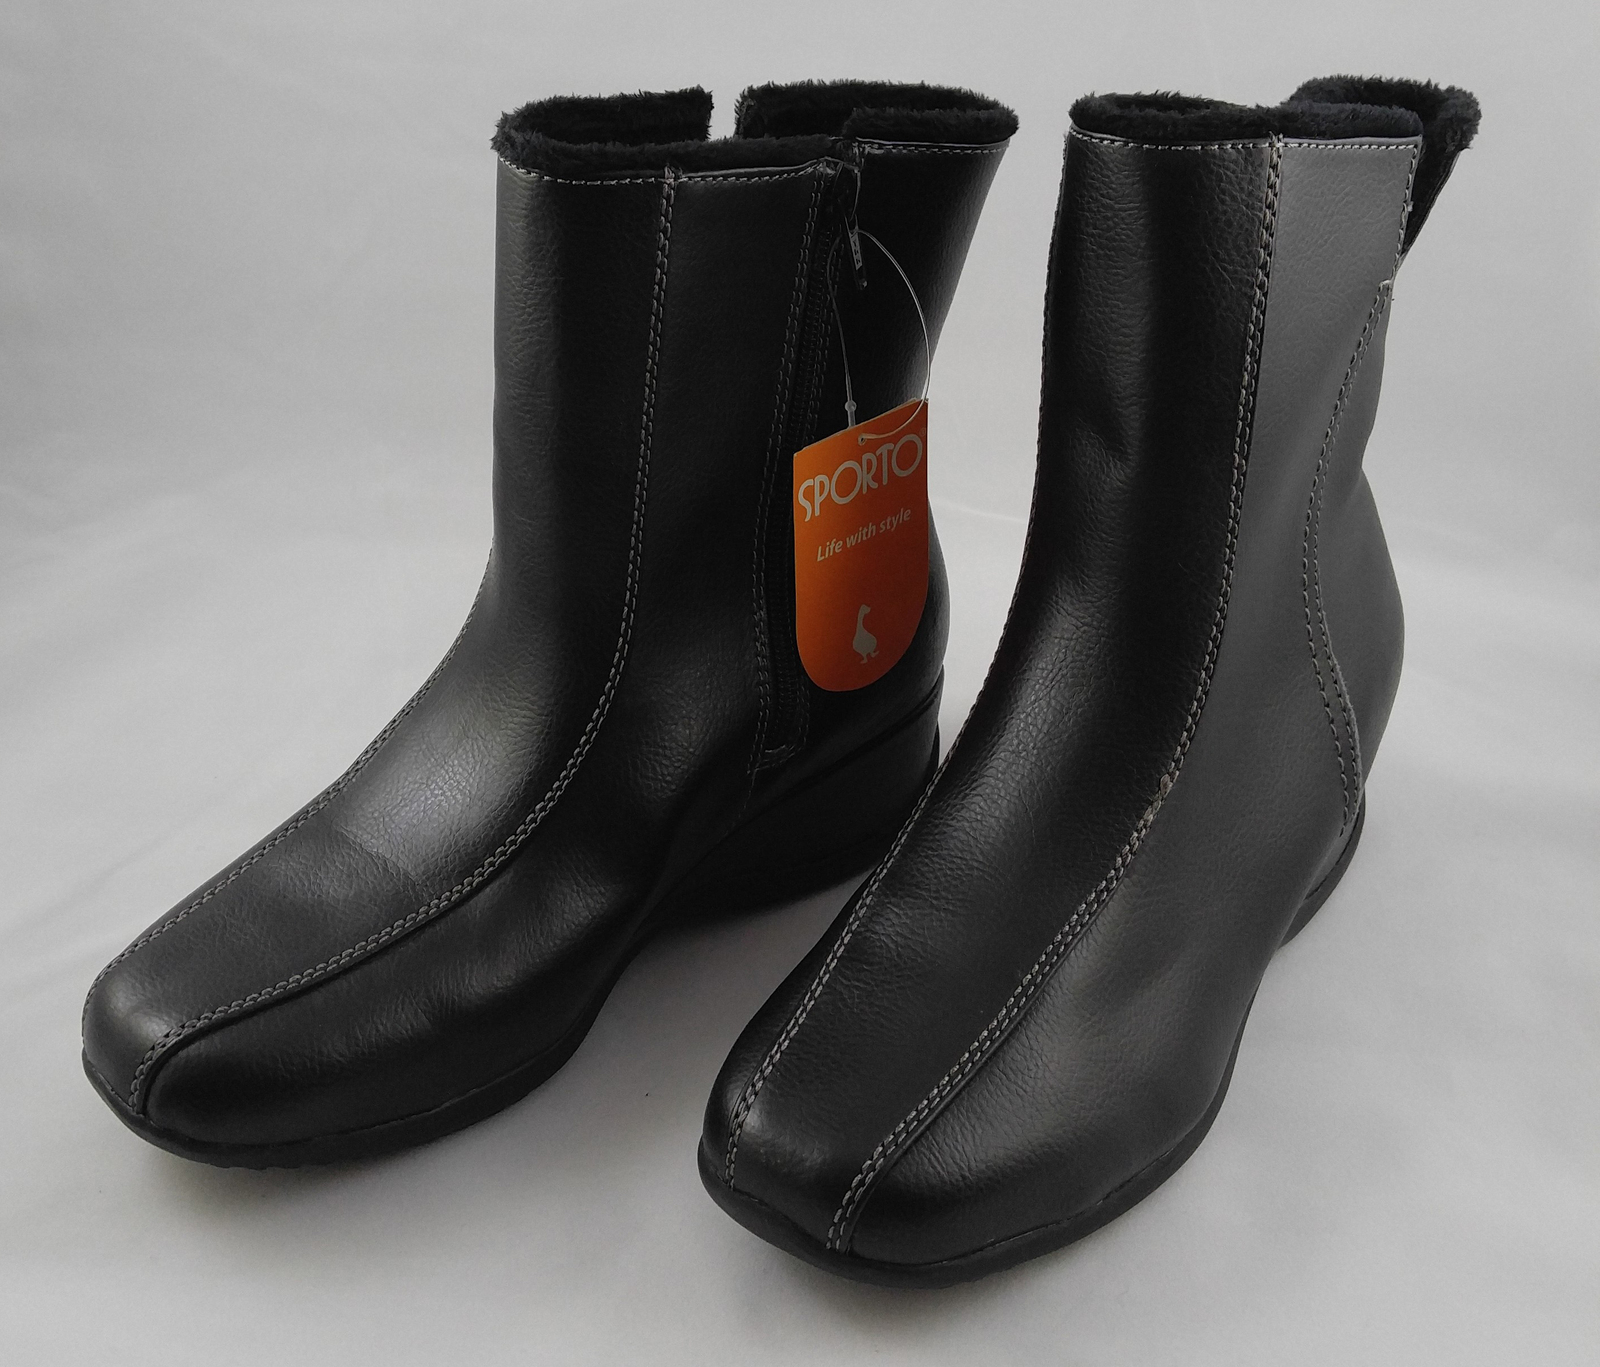 sporto boots waterproof